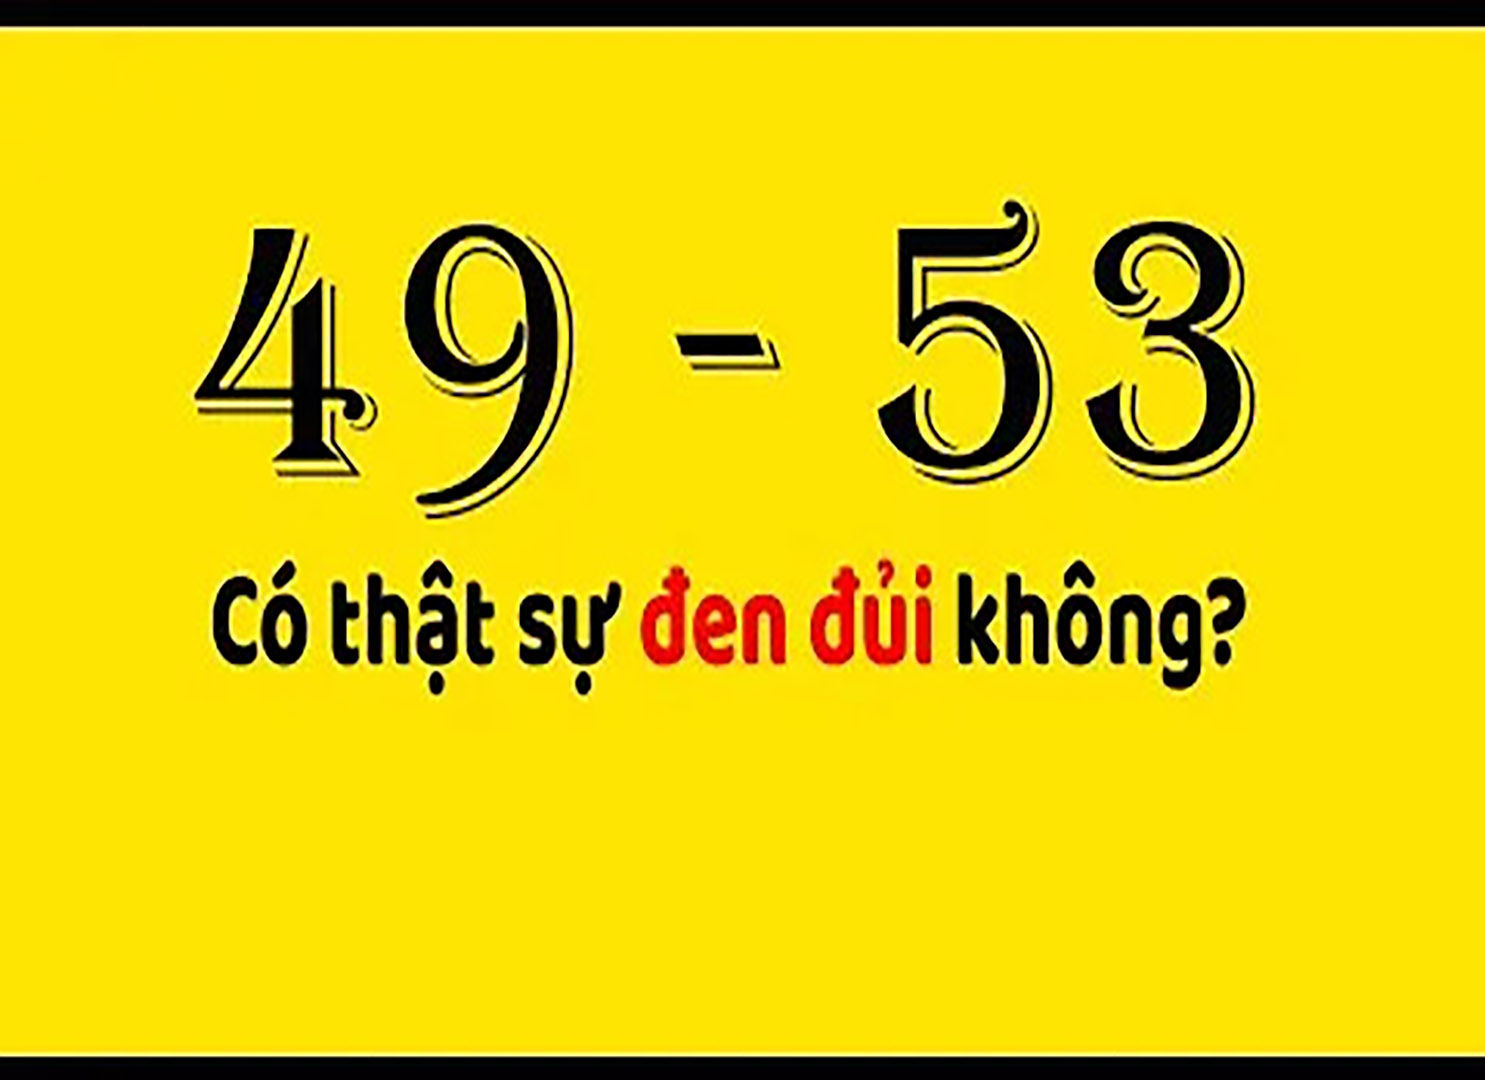 Biển số xe 49 53 có ý nghĩa gì? 49 53 có thực sự xui xẻo?